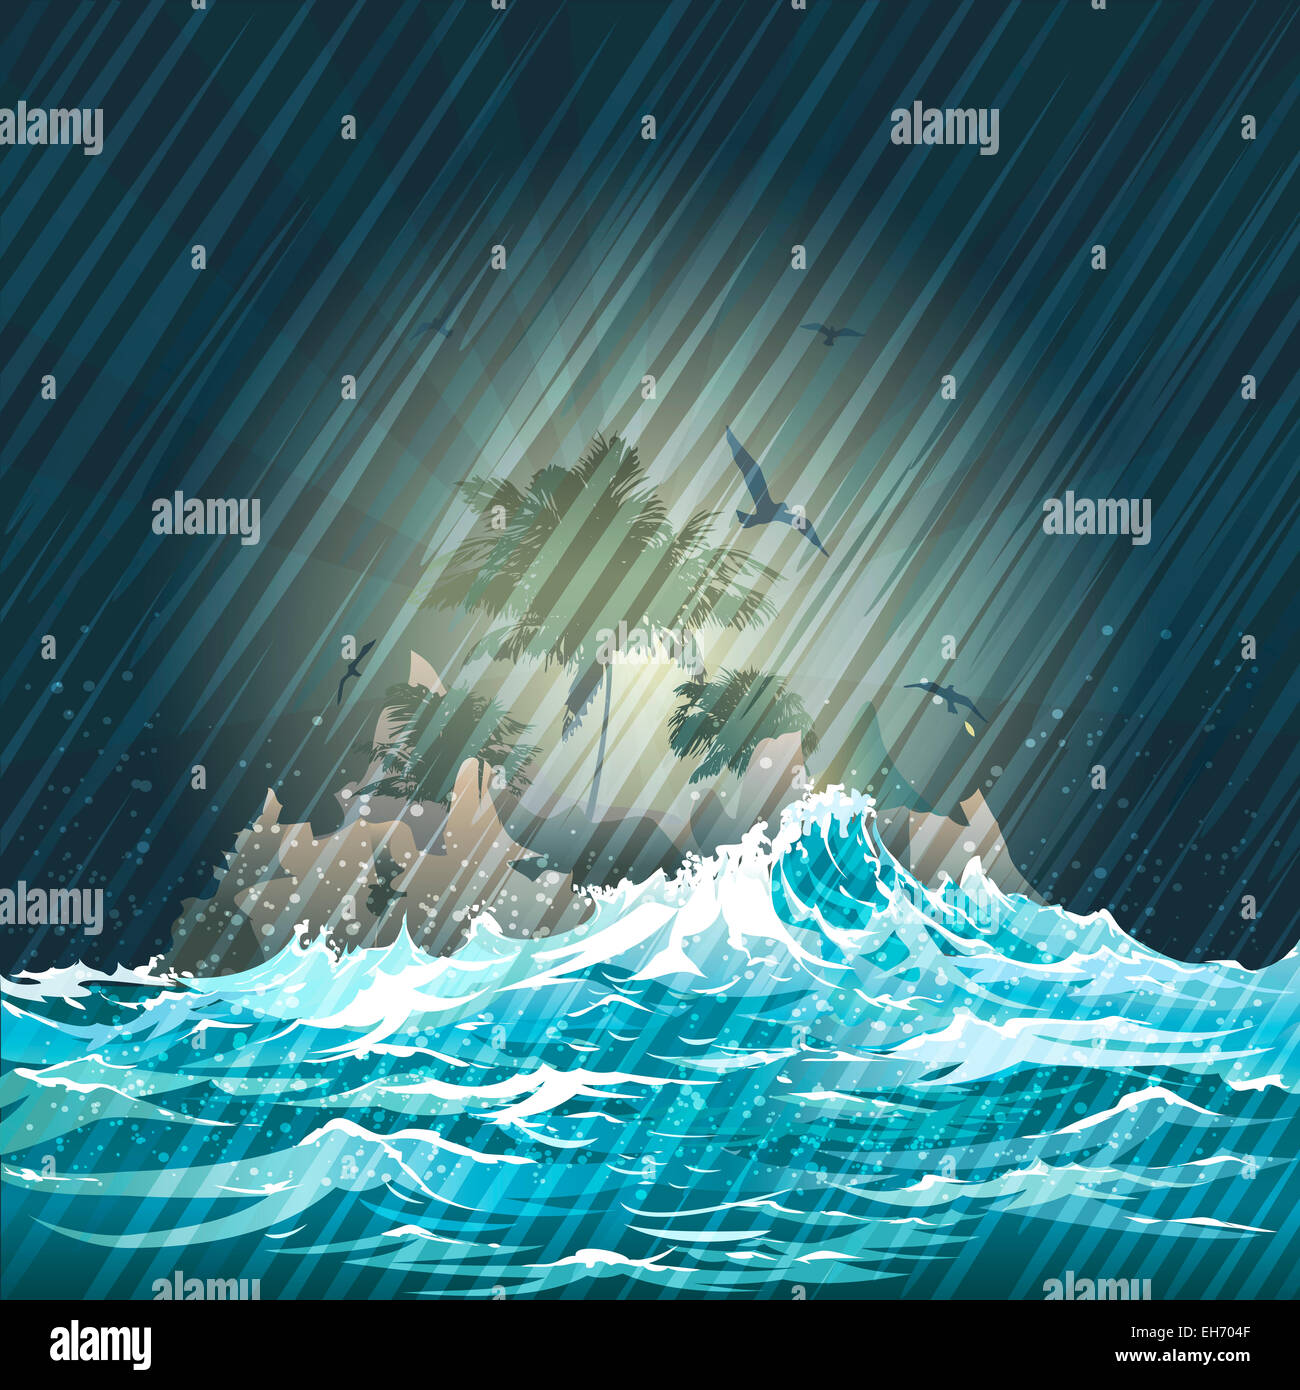 Illustration avec l'île perdue dans l'assaut contre l'océan nuit ciel pluvieux Banque D'Images